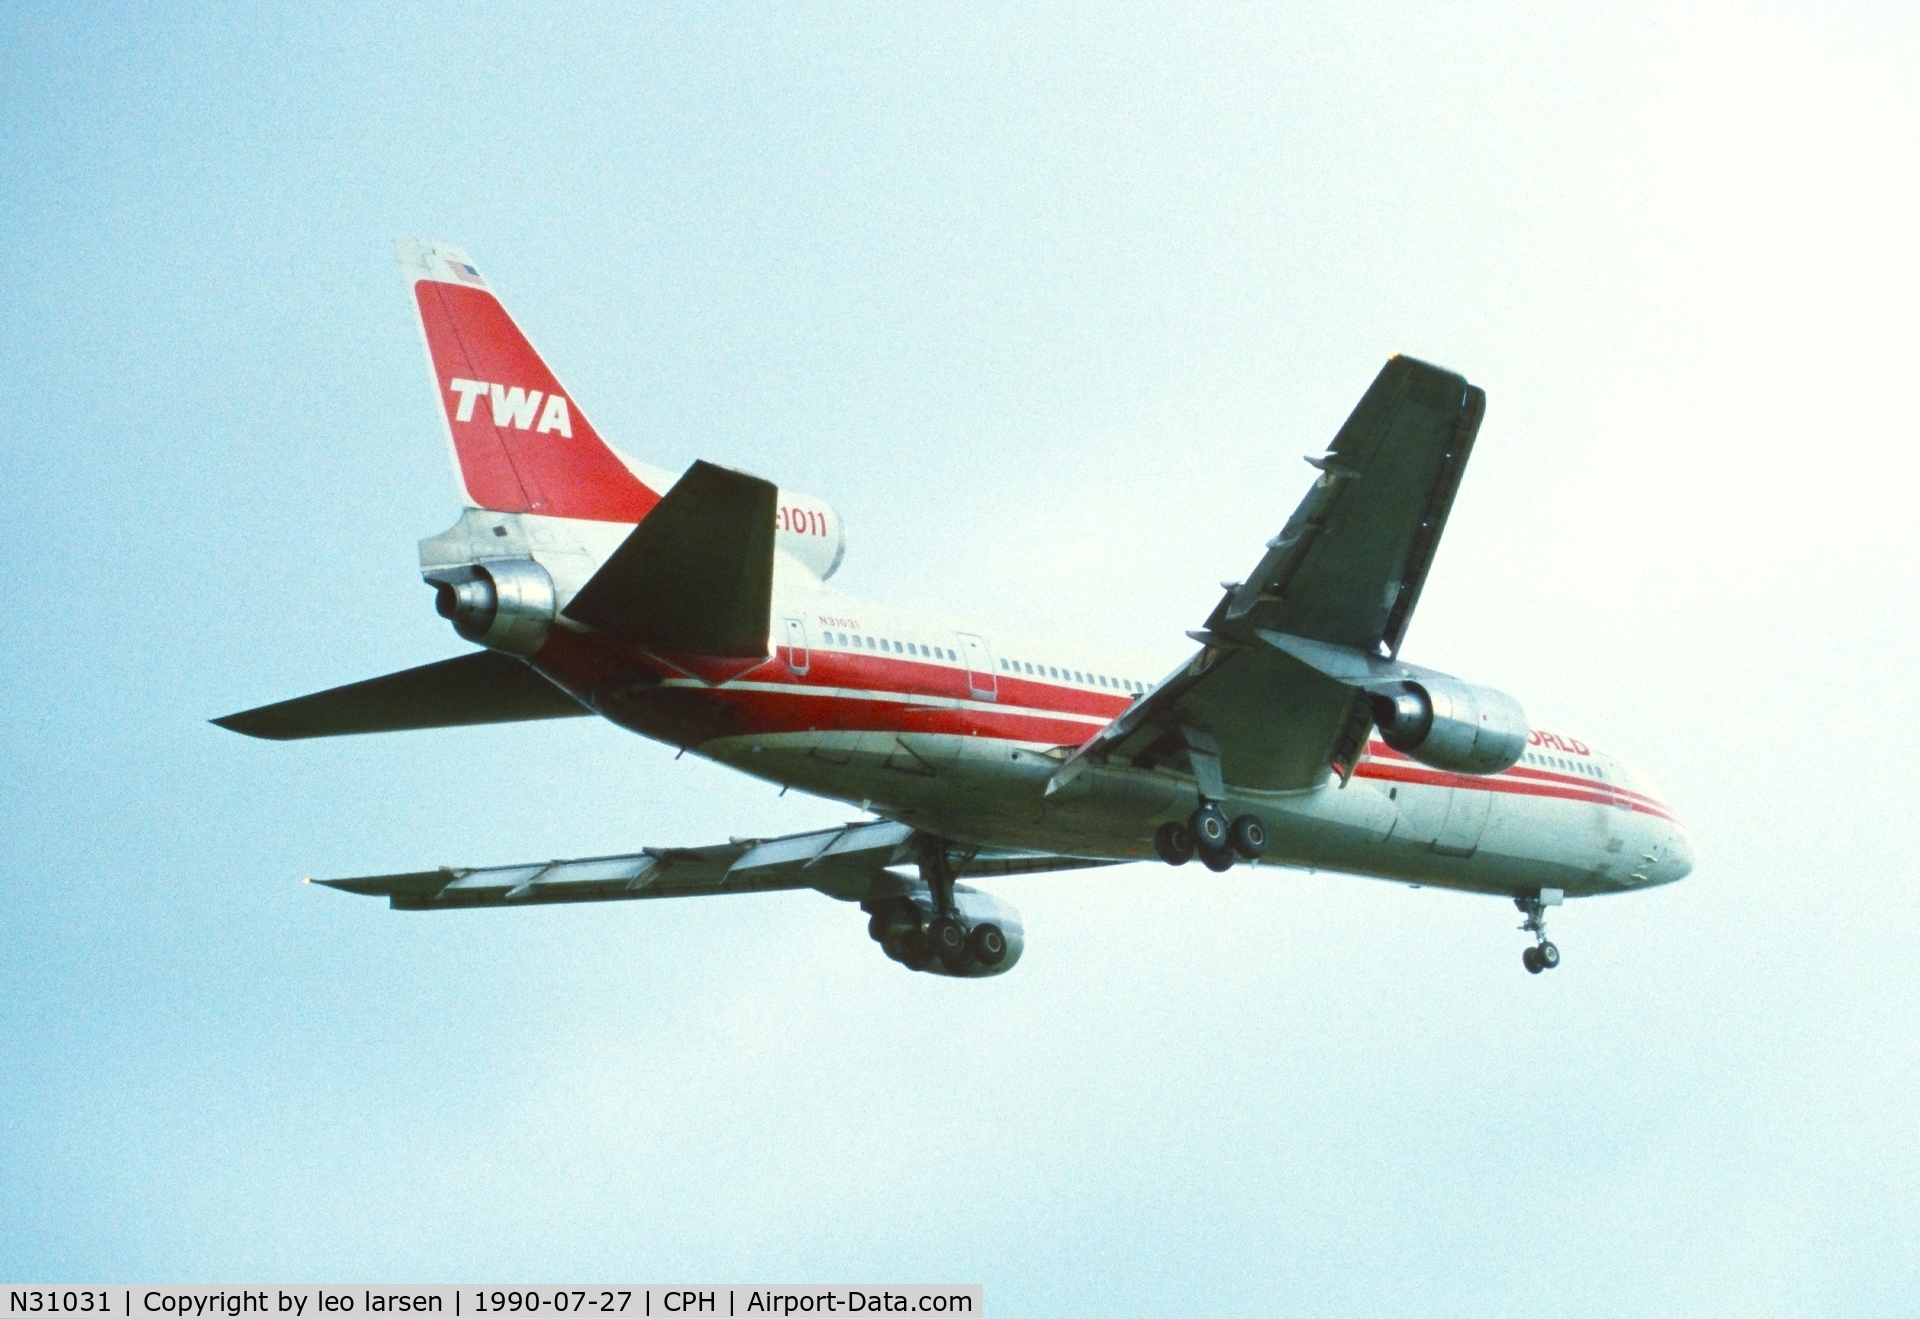 N31031, 1982 Lockheed L-1011-385-1-15 TriStar 100 C/N 193B-1115, Copenhagen 27.7.1990